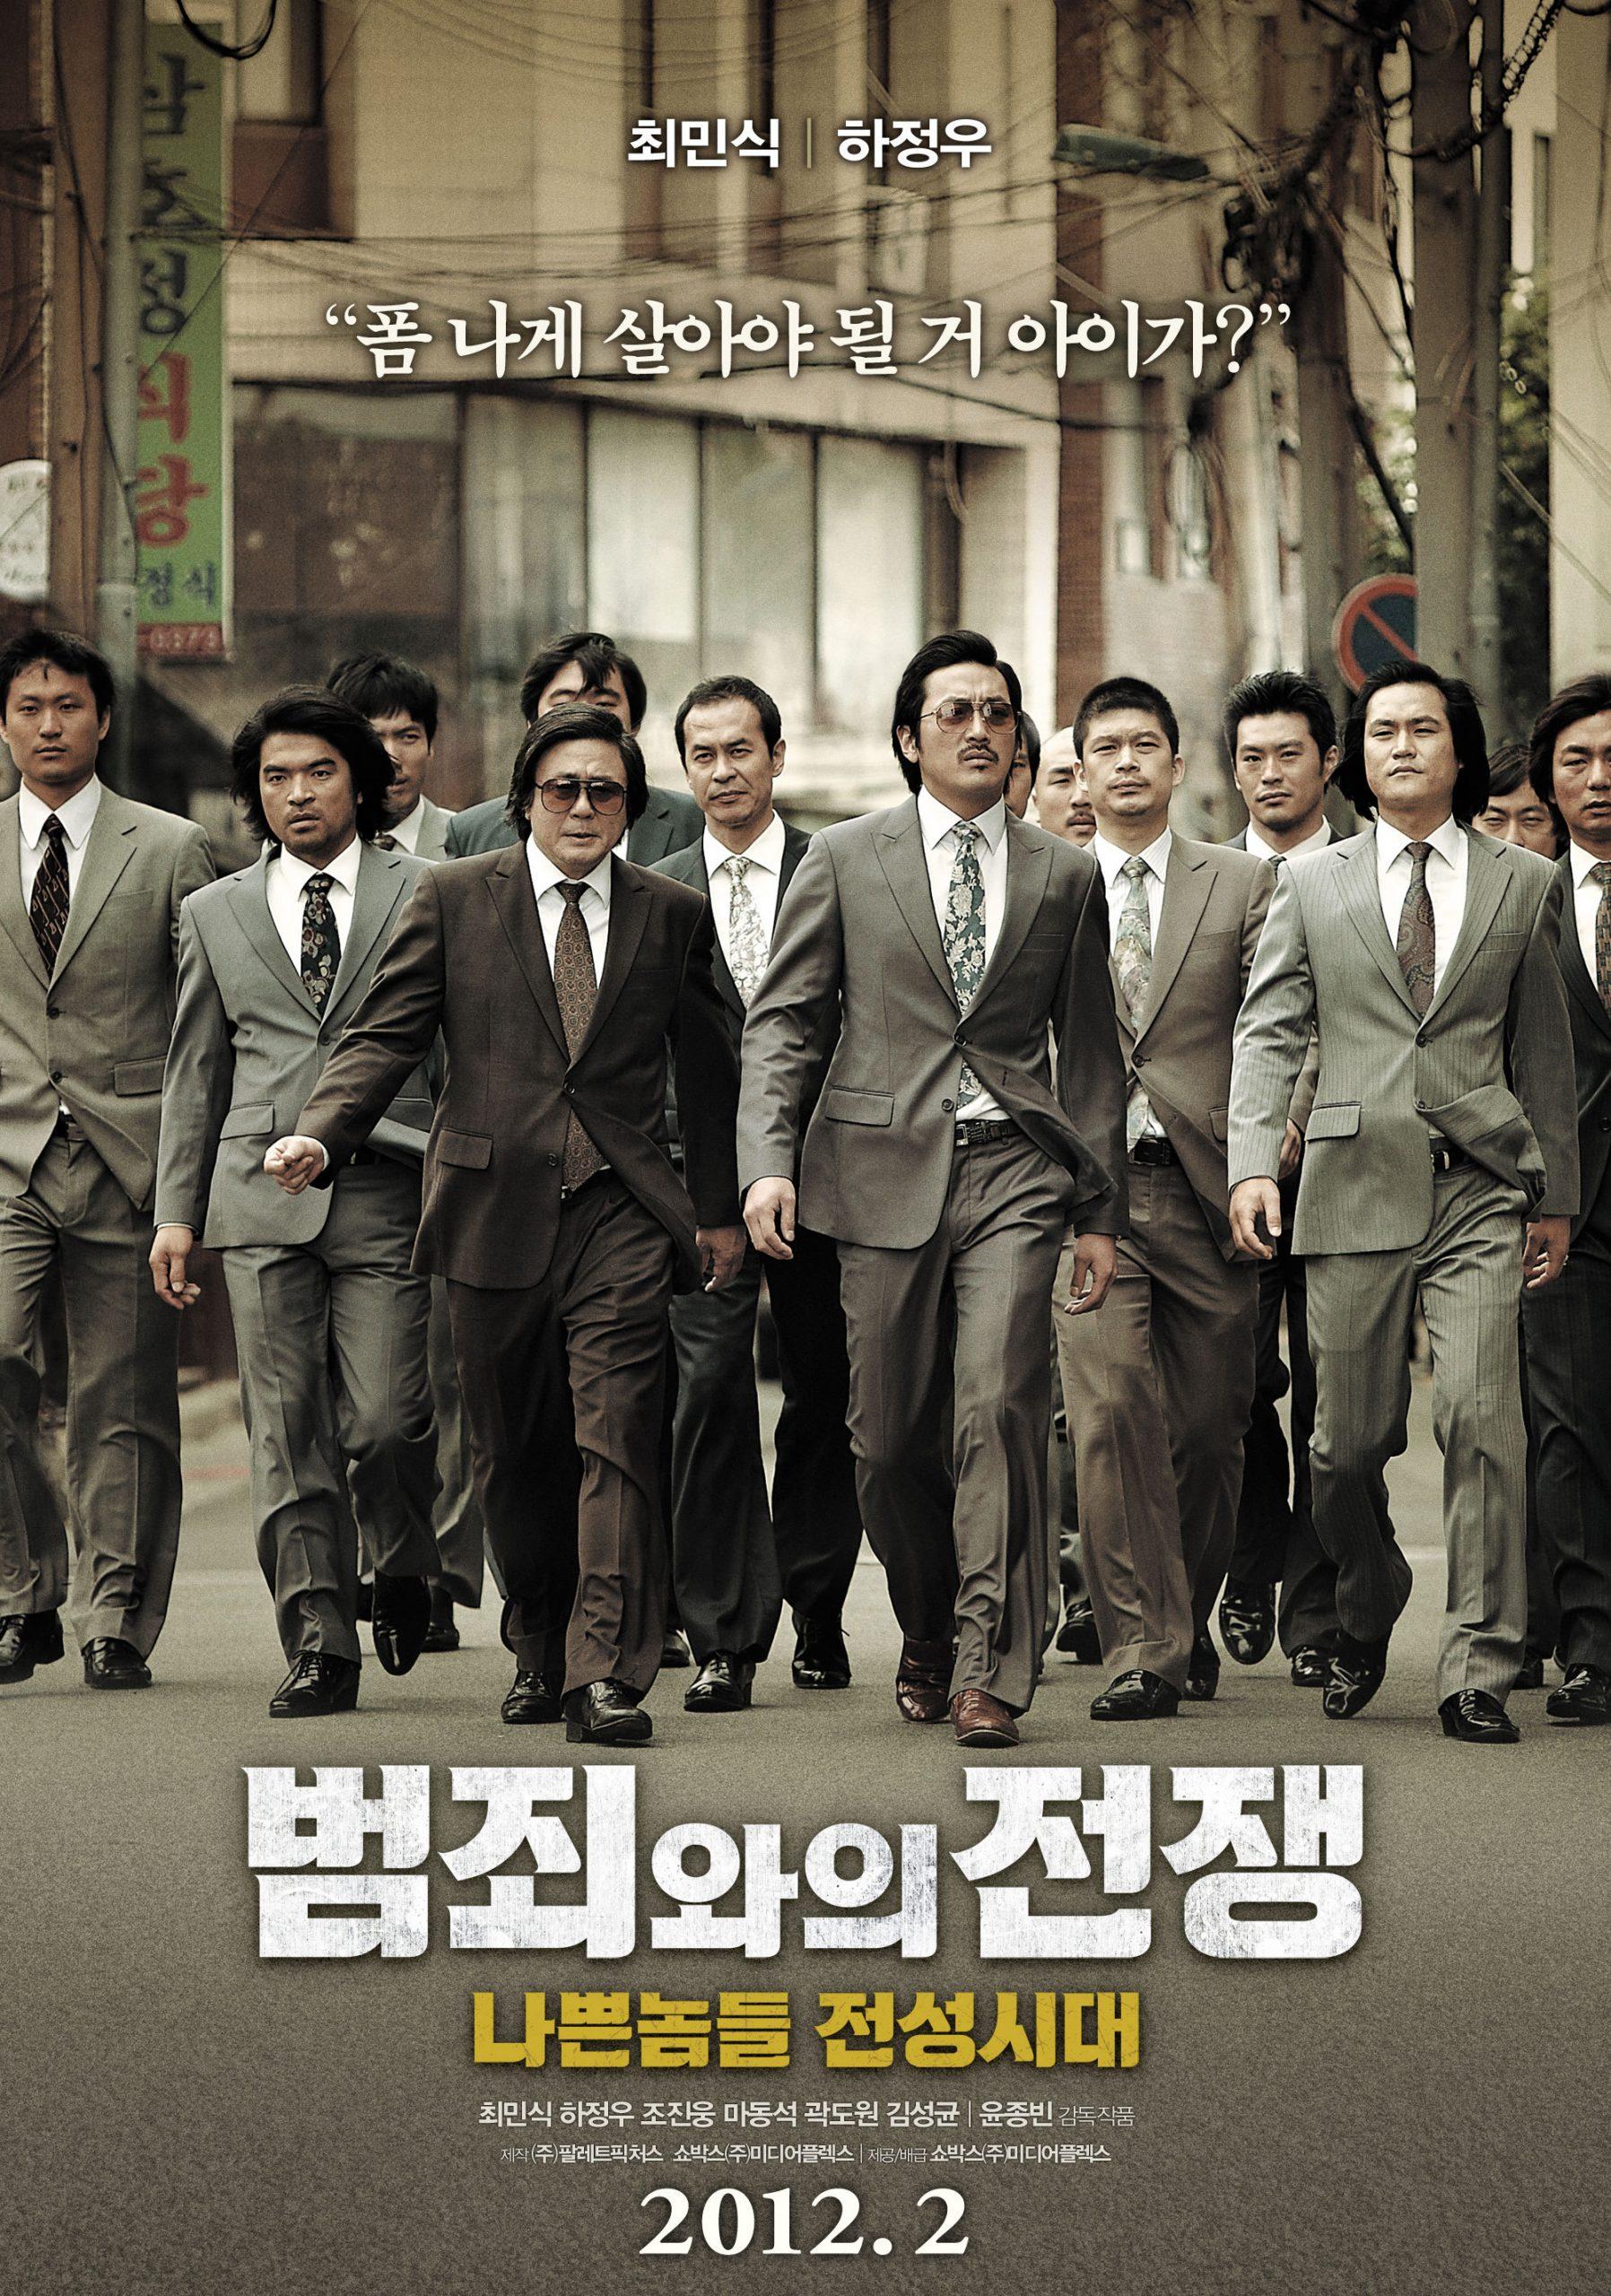 Sự kết hợp giữa phong cách Hàn Quốc và đề tài mafia đã tạo nên những bộ phim rất đặc sắc và ấn tượng. Nếu bạn là fan của phim Hàn Quốc và muốn khám phá thế giới tội ác của các tay trùm mafia, hãy xem hình ảnh liên quan ngay bây giờ.